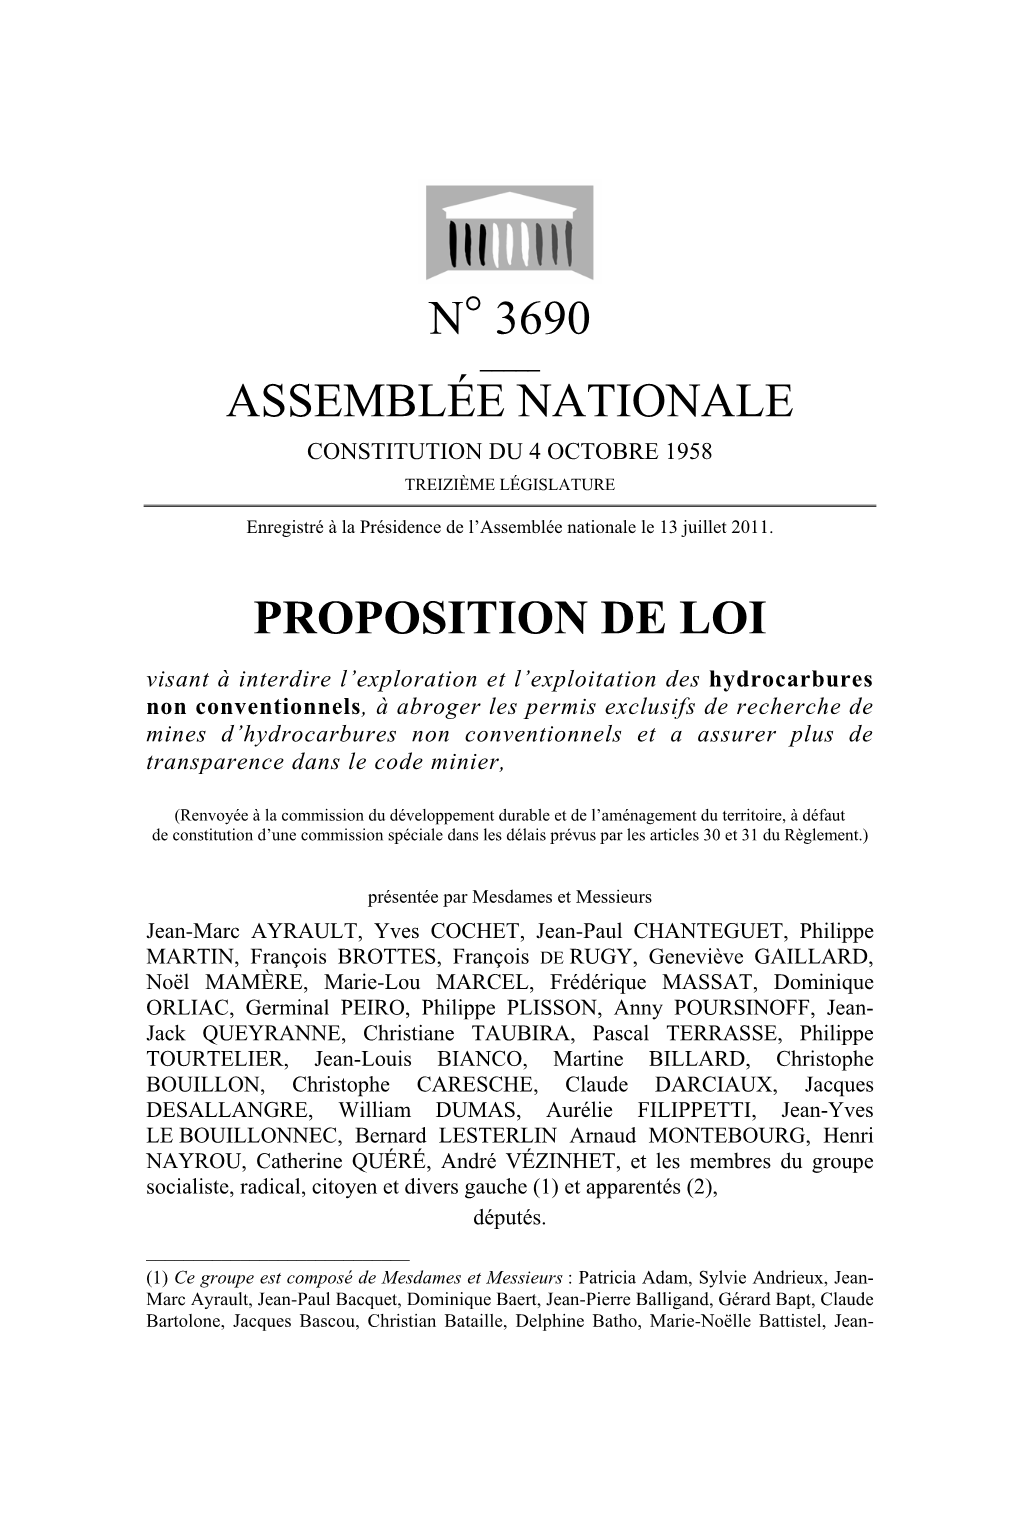 N° 3690 Assemblée Nationale Proposition De